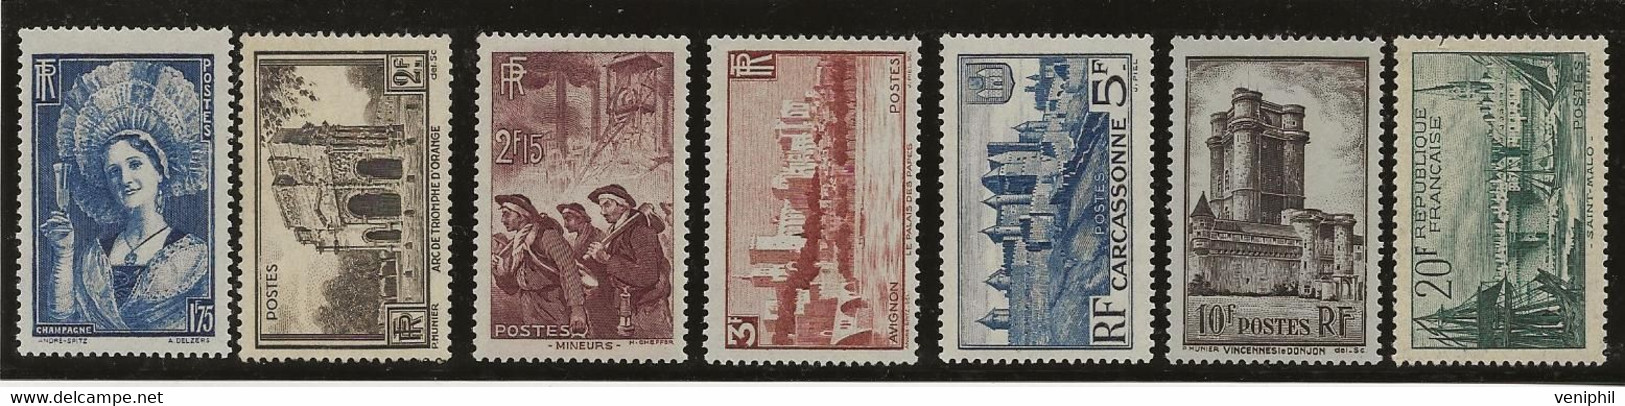 FRANCE  SERIE N° 388 A 394 NEUVE SANS CHARNIERE -ANNEE 1938 - COTE : 165 € - Neufs